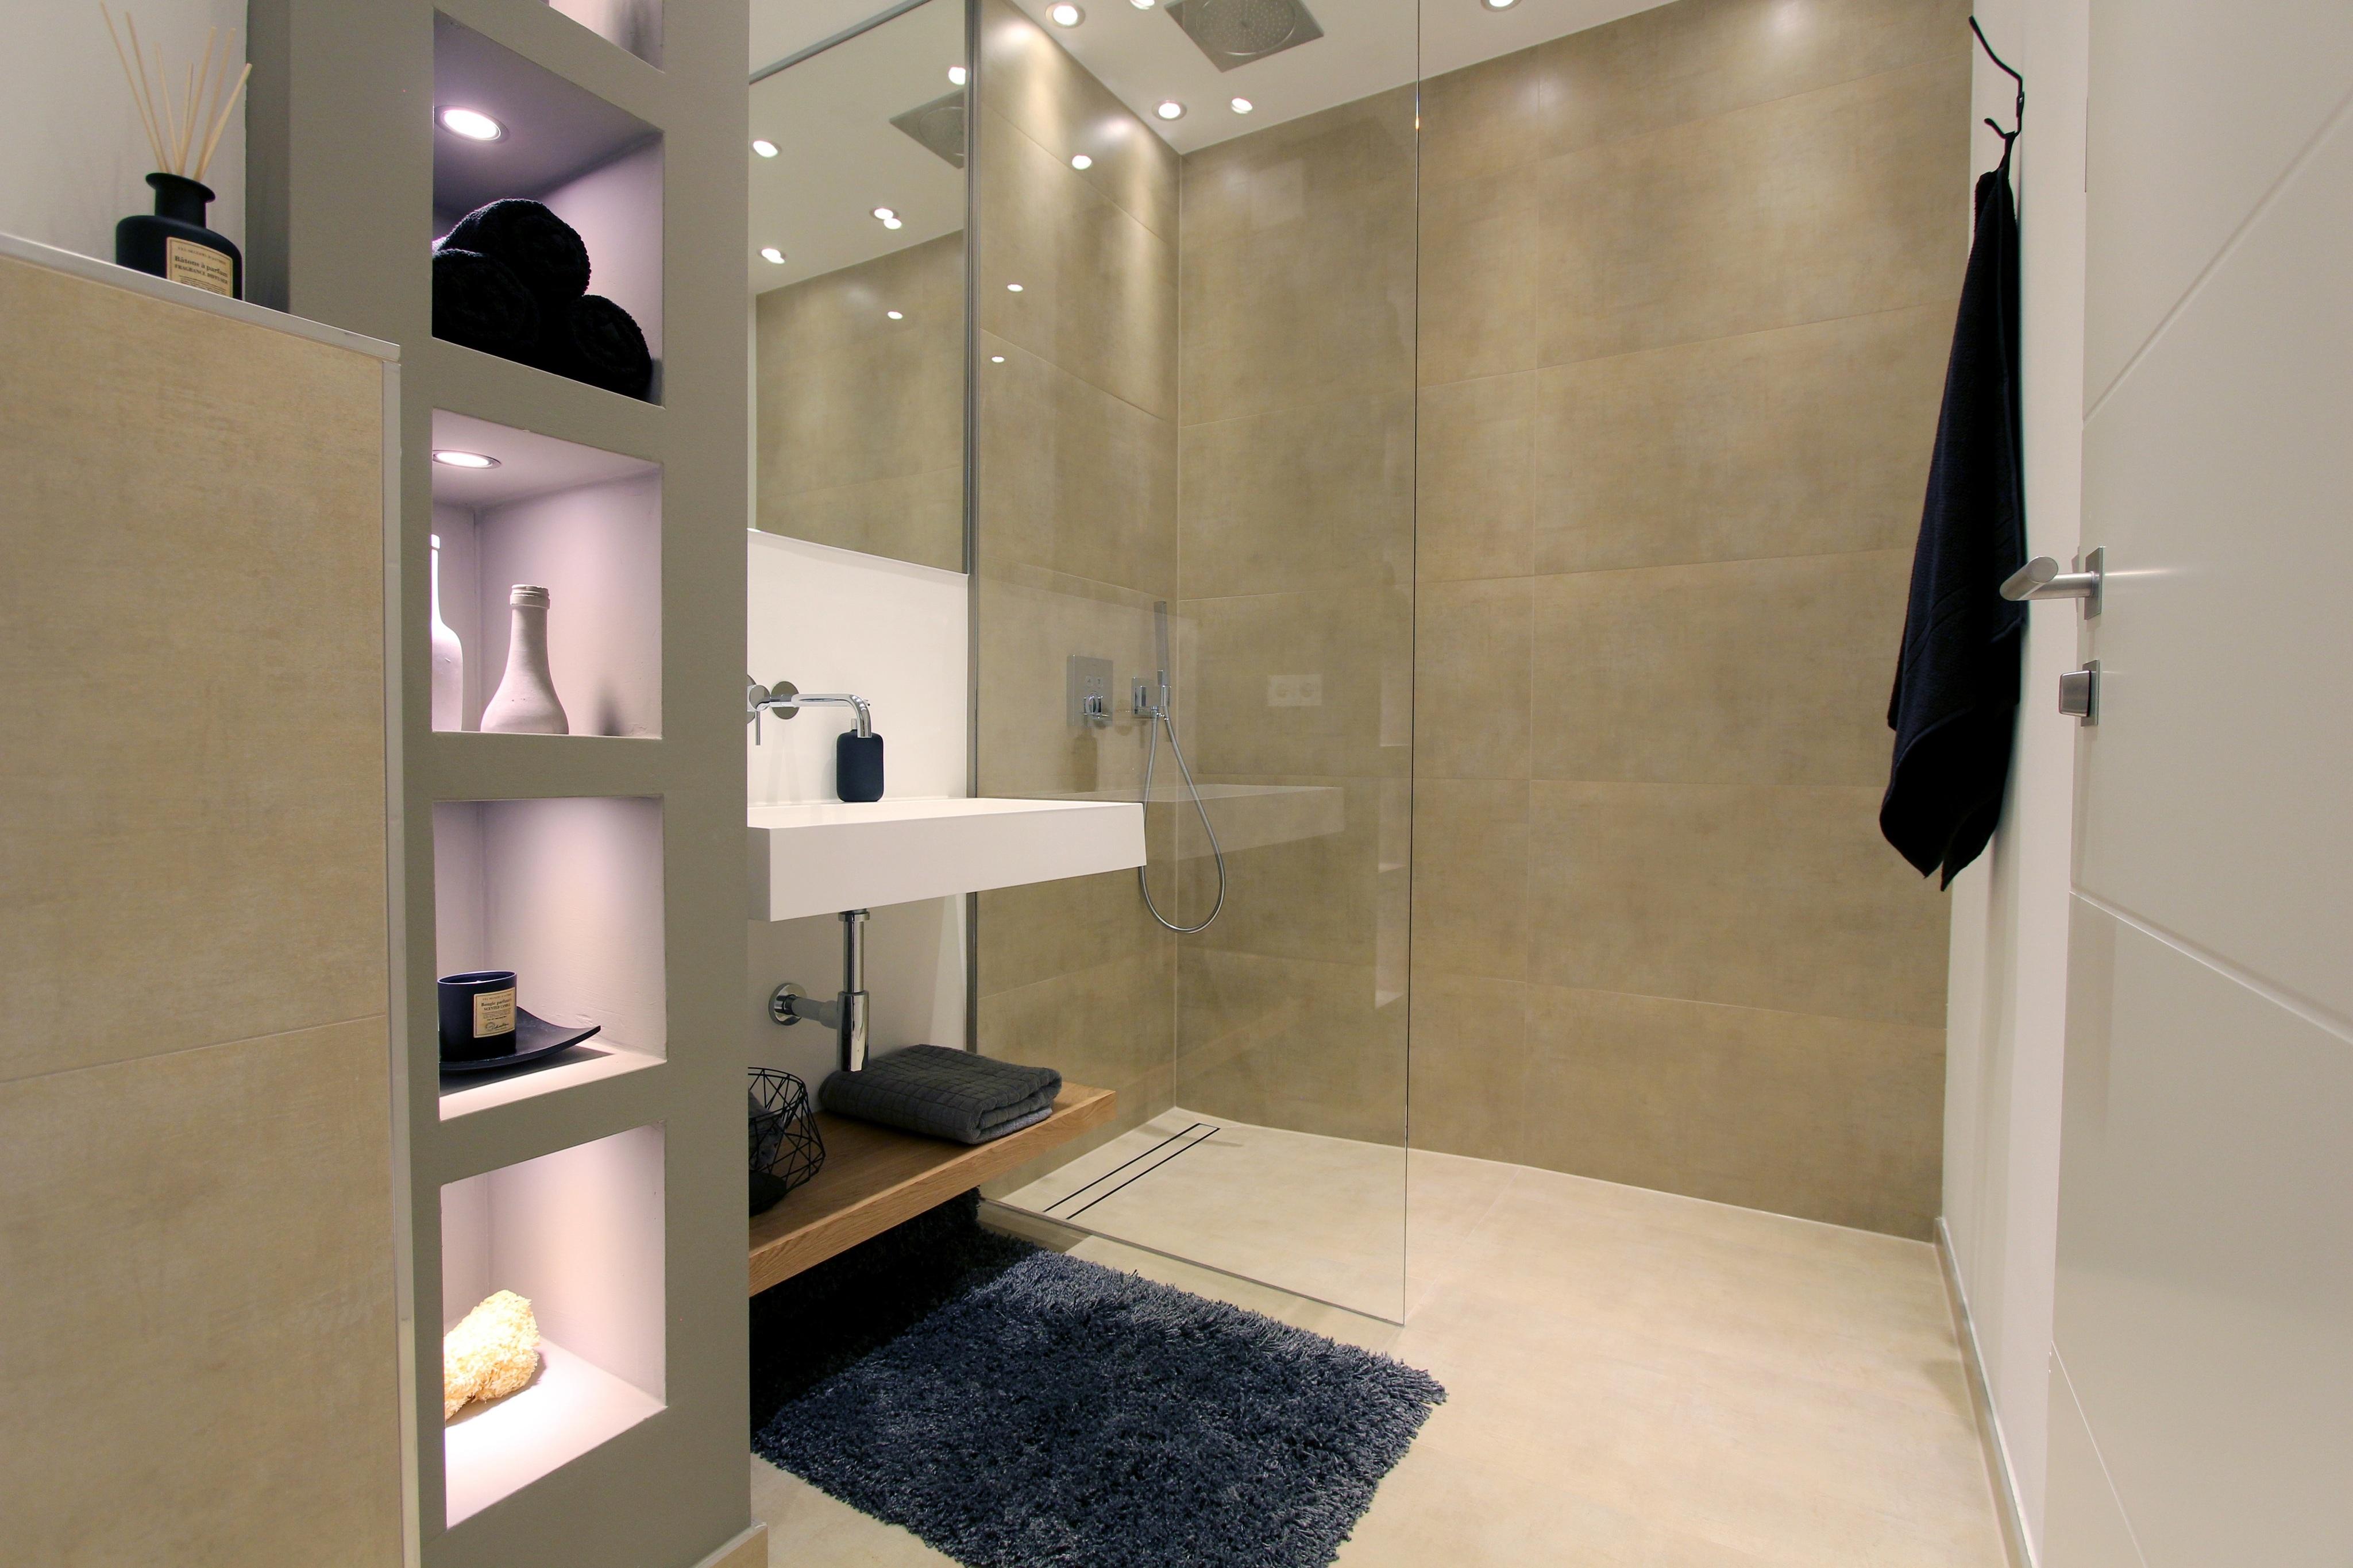 Home Staging Badezimmer #badezimmer #ebenerdigedusche #einrichtungsberatung #raumgestaltung ©Isabella Hemmer